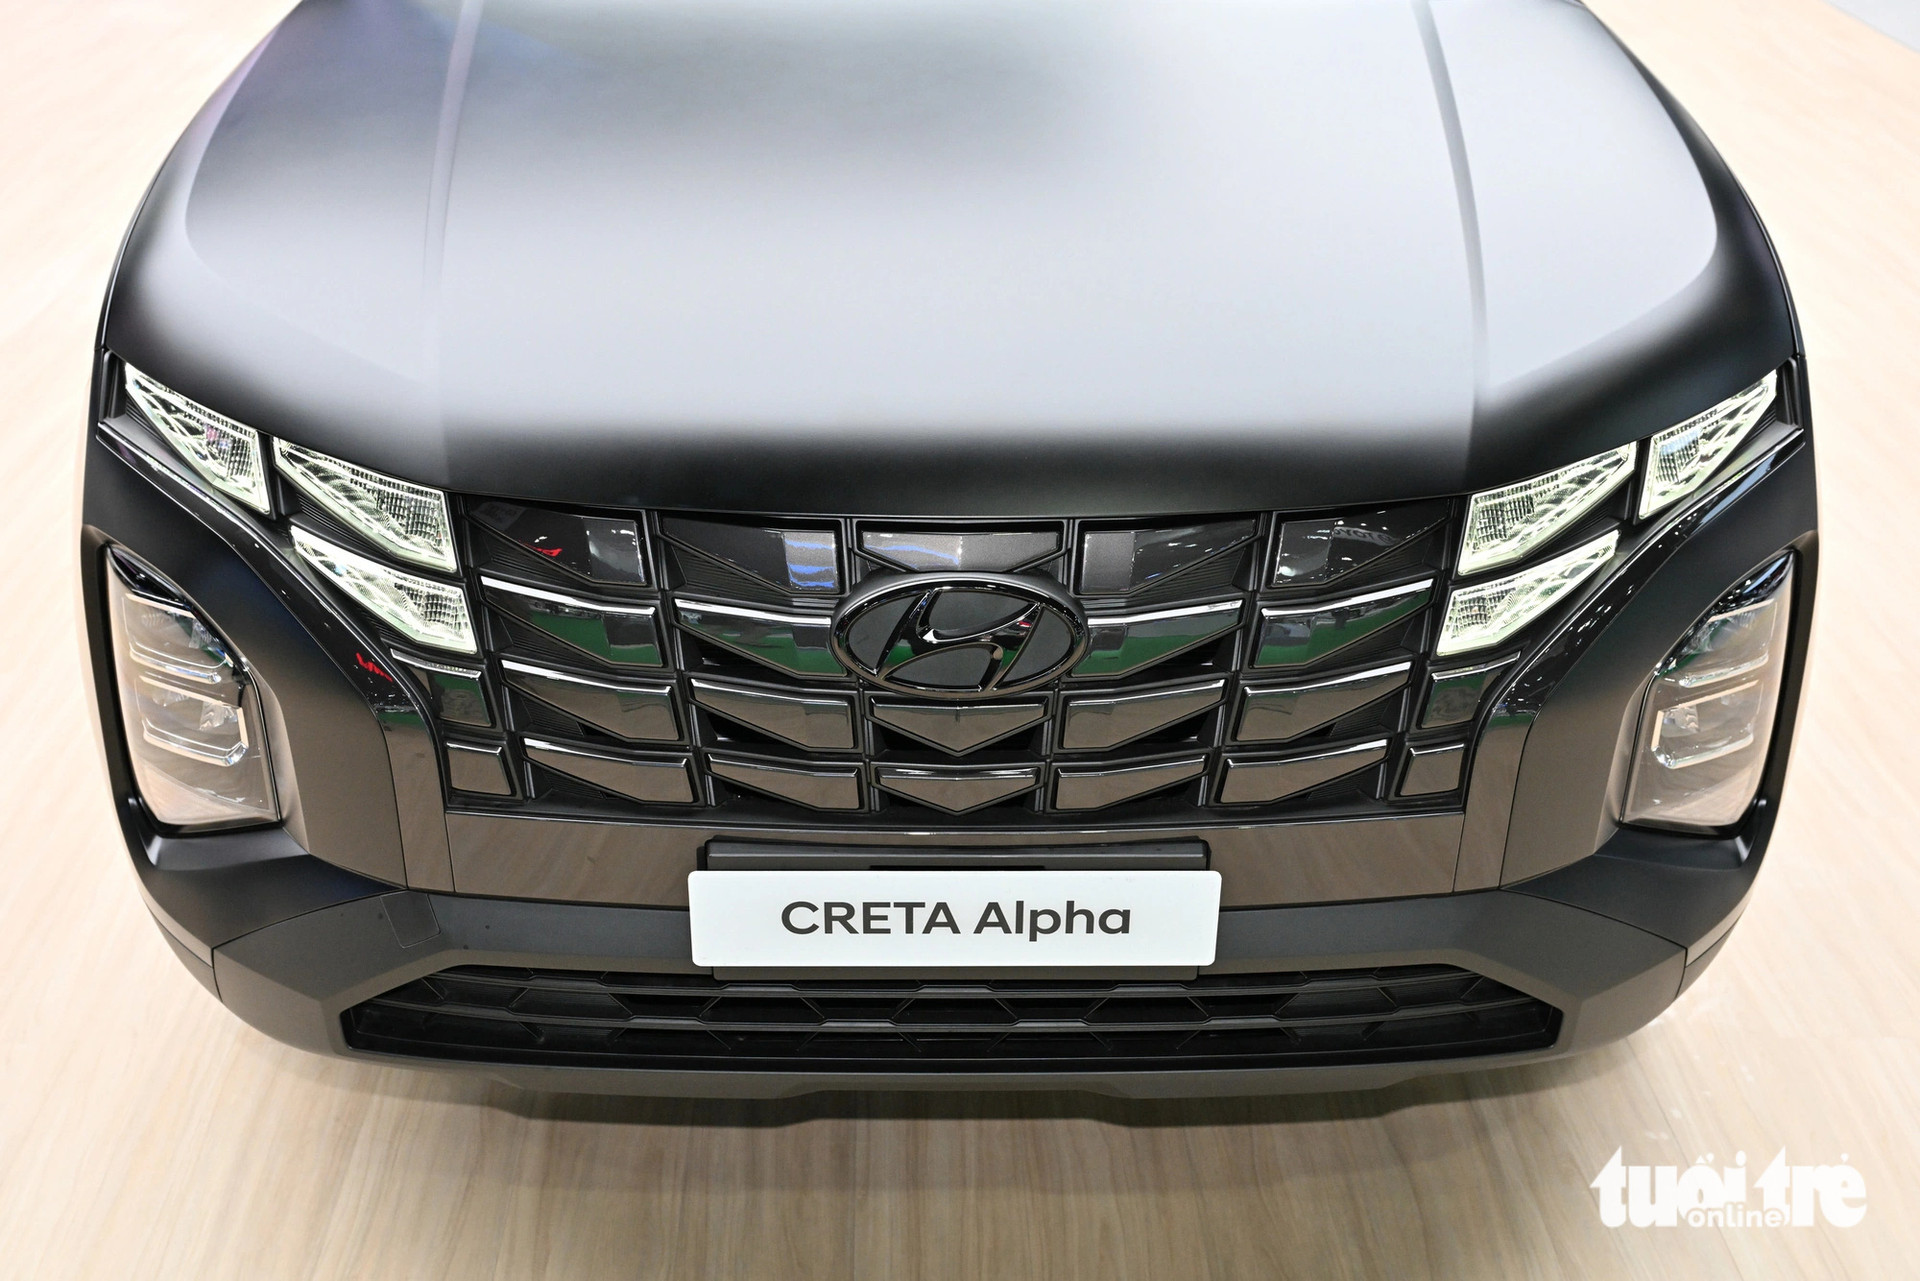 Đầu xe Hyundai Creta Alpha sở hữu lưới tản nhiệt được mạ chrome tối màu. Cụm đèn pha LED phản xạ đa điểm, bên cạnh đèn LED ban ngày tiêu chuẩn.